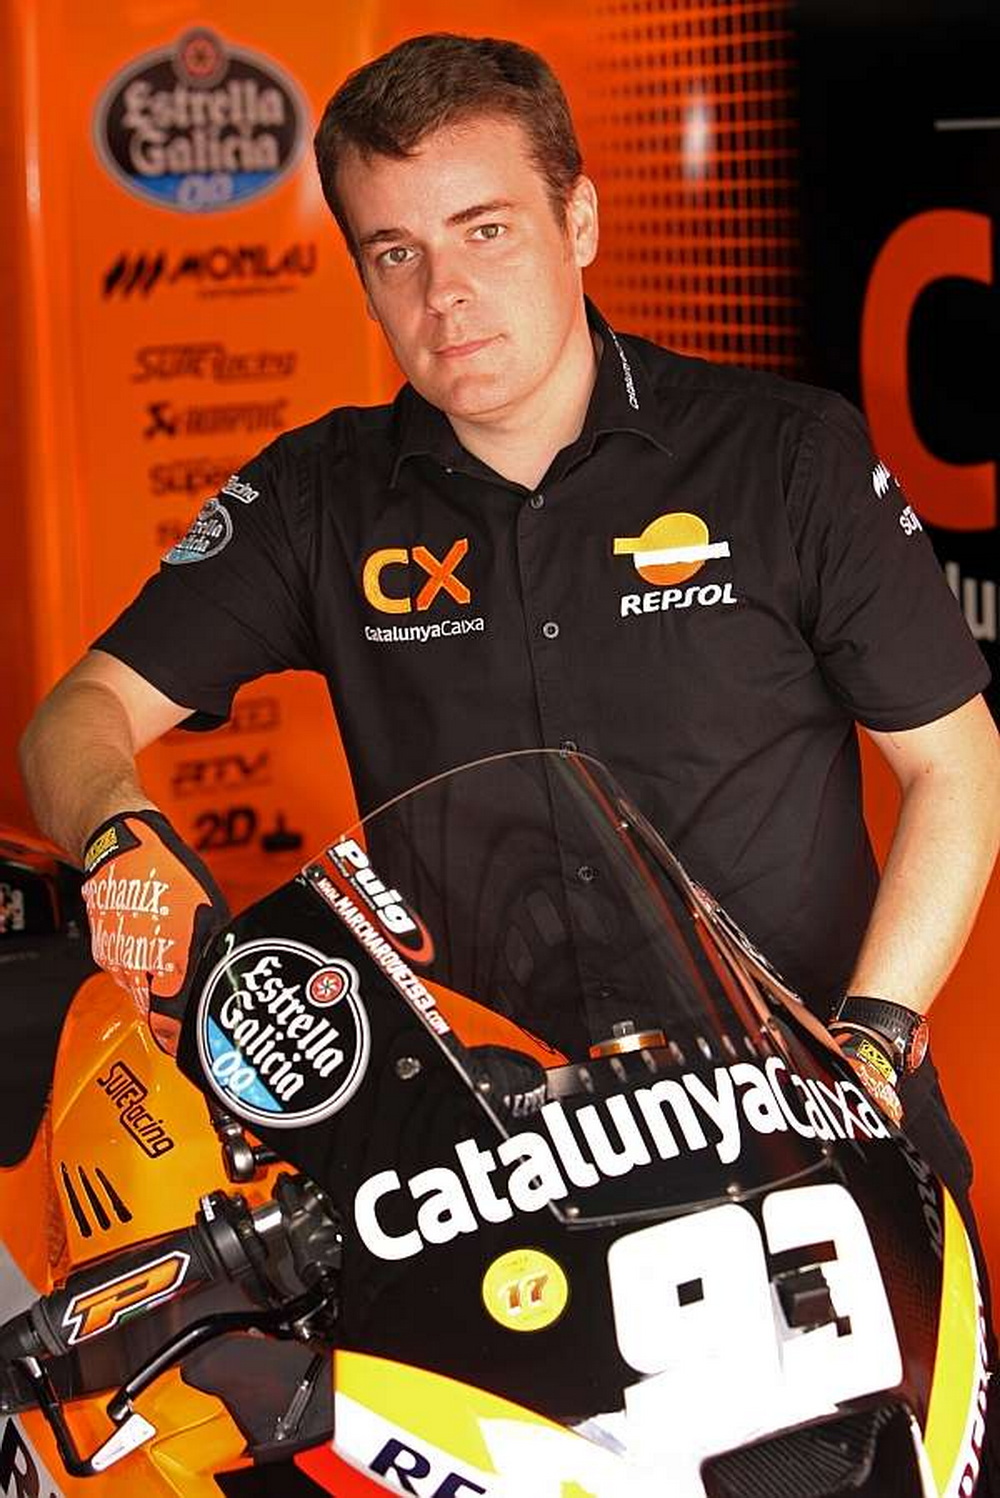 Жорди Кастеллья, механик команды Маркеса в Moto2 и MotoGP